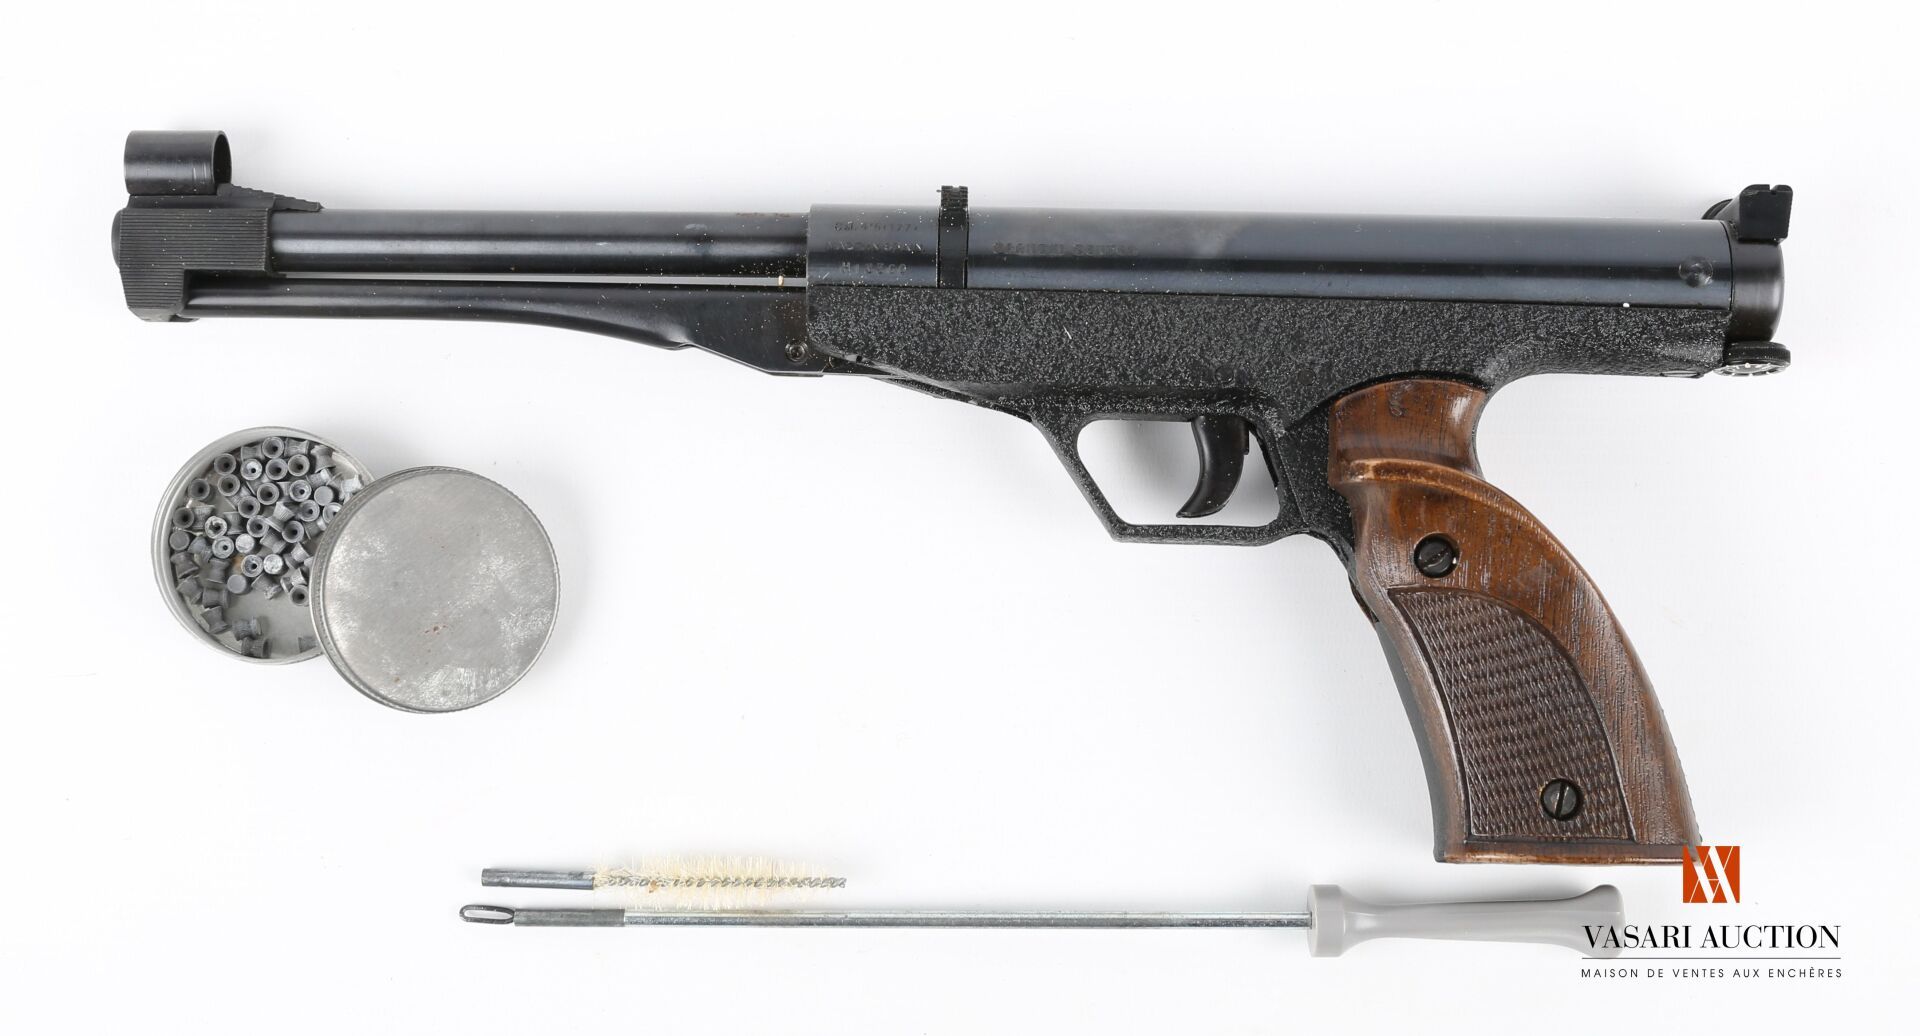 Null 西班牙制造的FRANCHI CENTER气枪，口径4.5毫米（.177），膛线枪管18.5厘米，通过倾斜的枪桶装弹，通过下部杠杆臂上膛，解剖式握把，编&hellip;